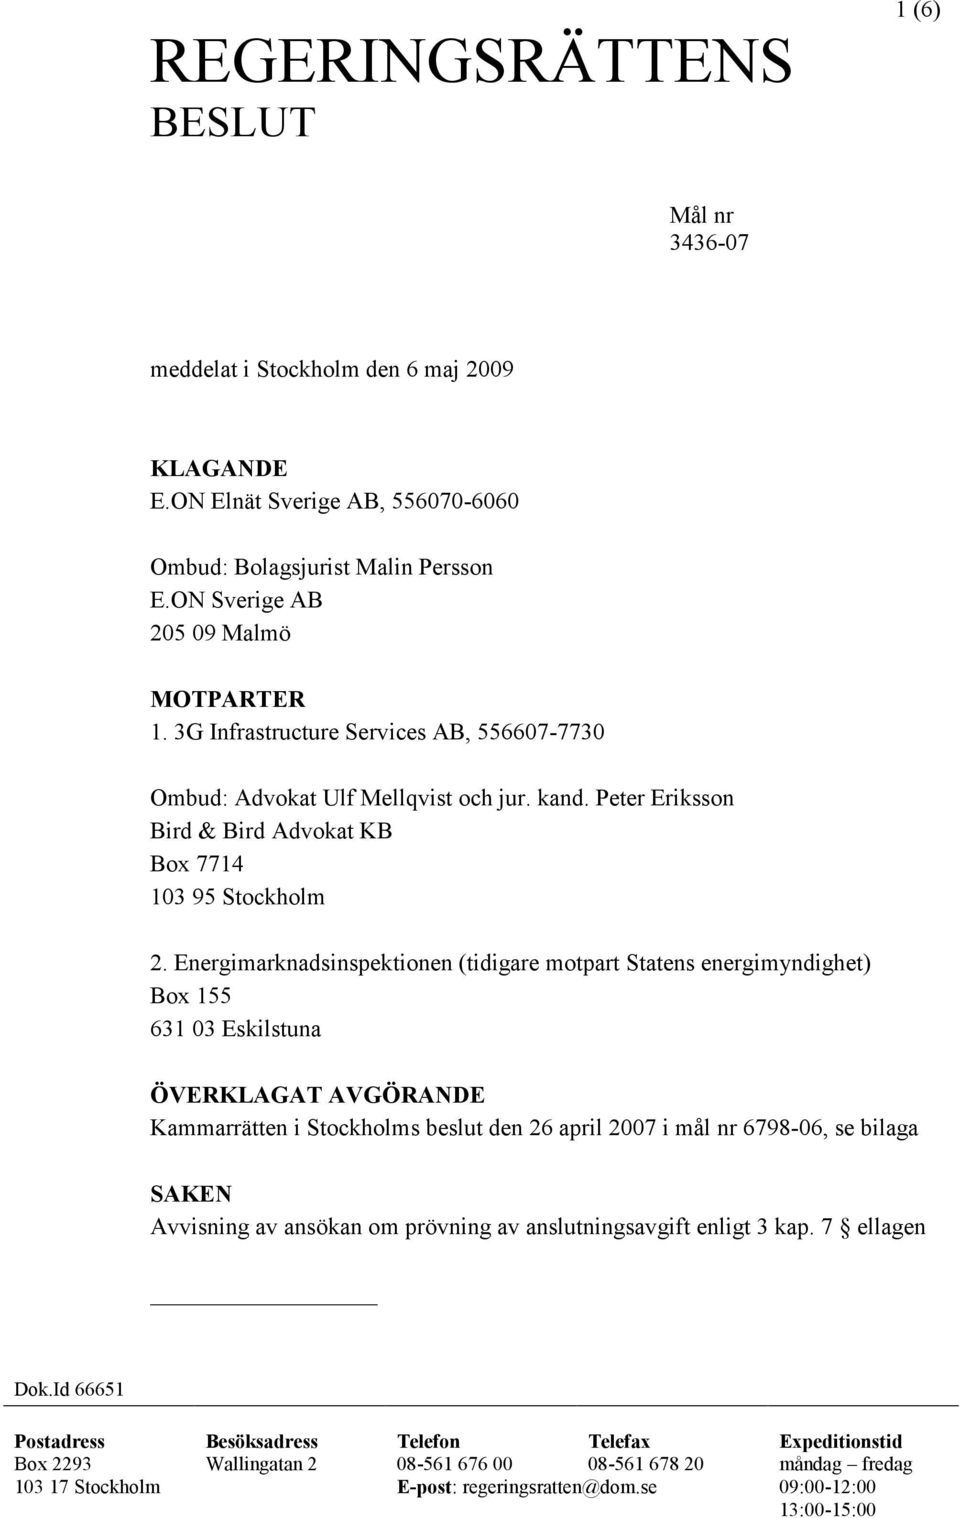 Energimarknadsinspektionen (tidigare motpart Statens energimyndighet) Box 155 631 03 Eskilstuna ÖVERKLAGAT AVGÖRANDE Kammarrätten i Stockholms beslut den 26 april 2007 i mål nr 6798-06, se bilaga